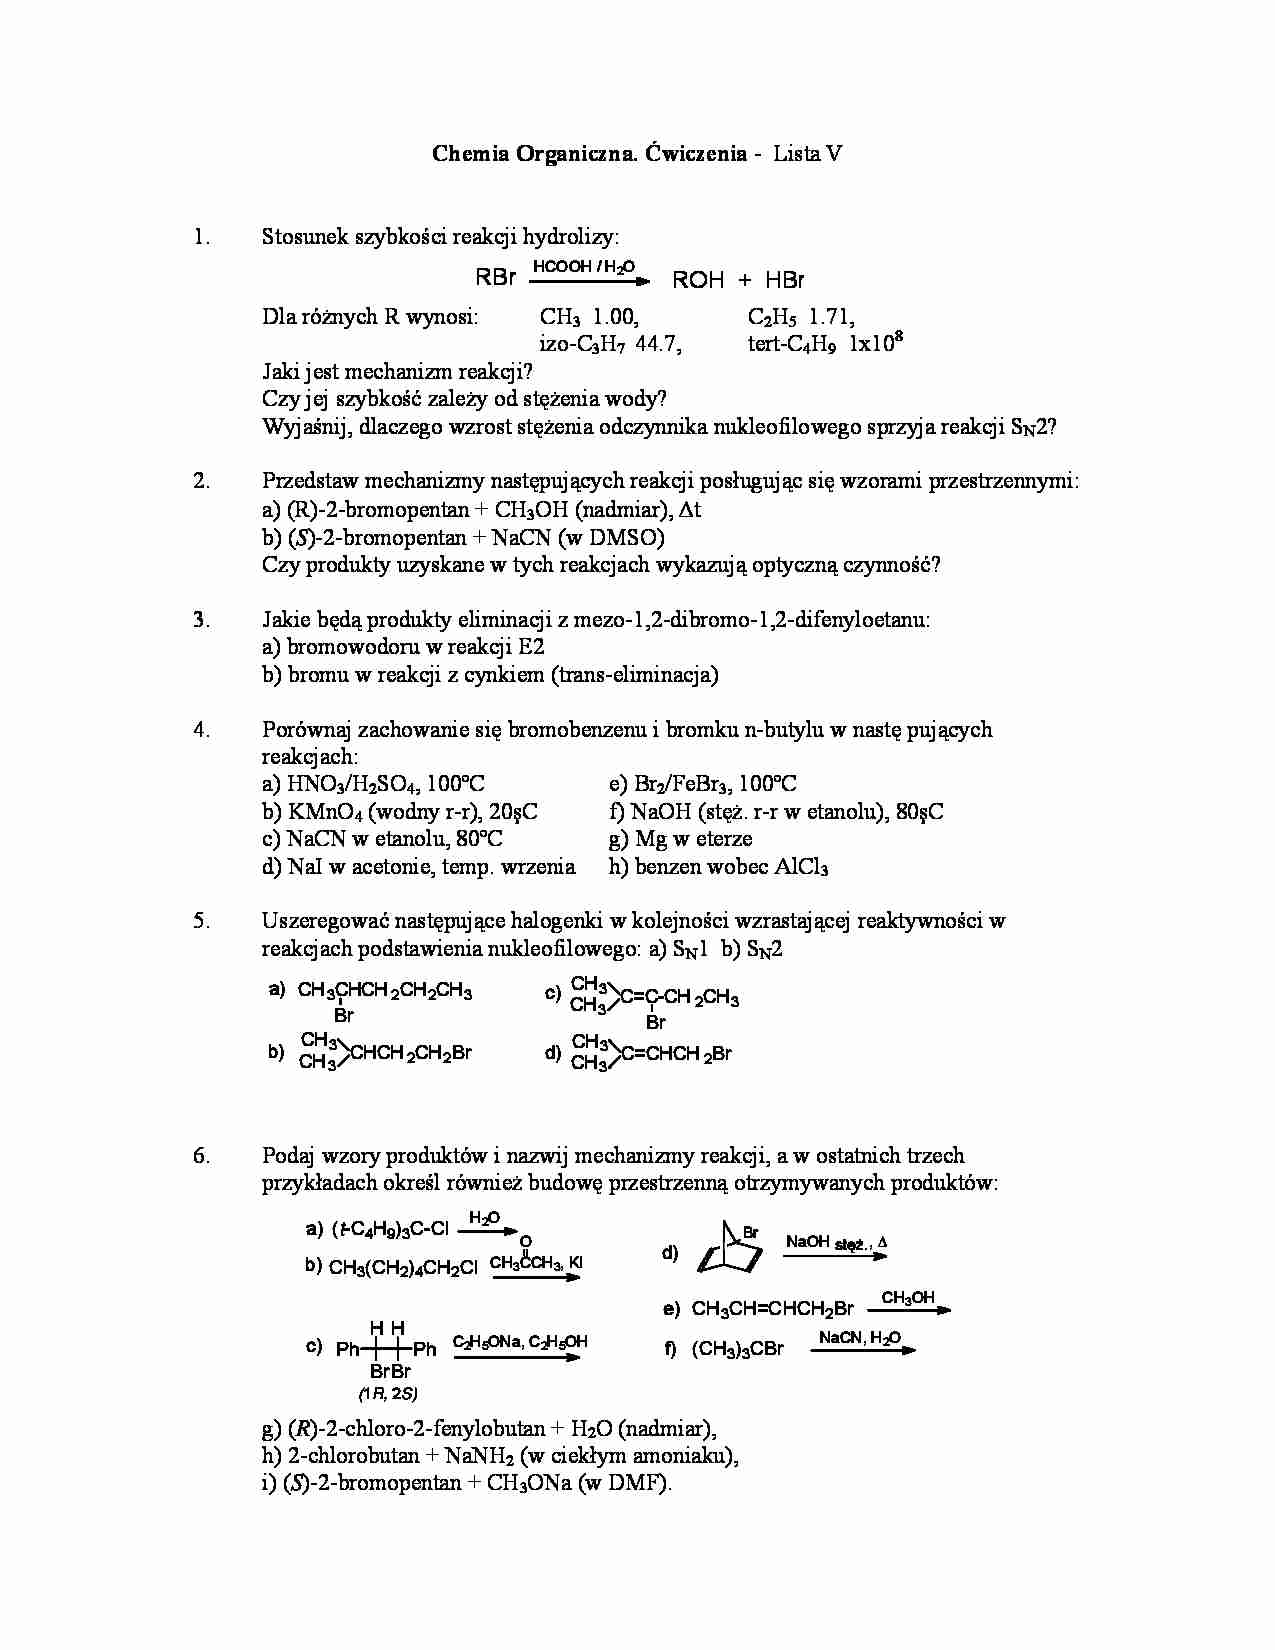 Chemia organiczna - ćwiczenia, lista V - strona 1